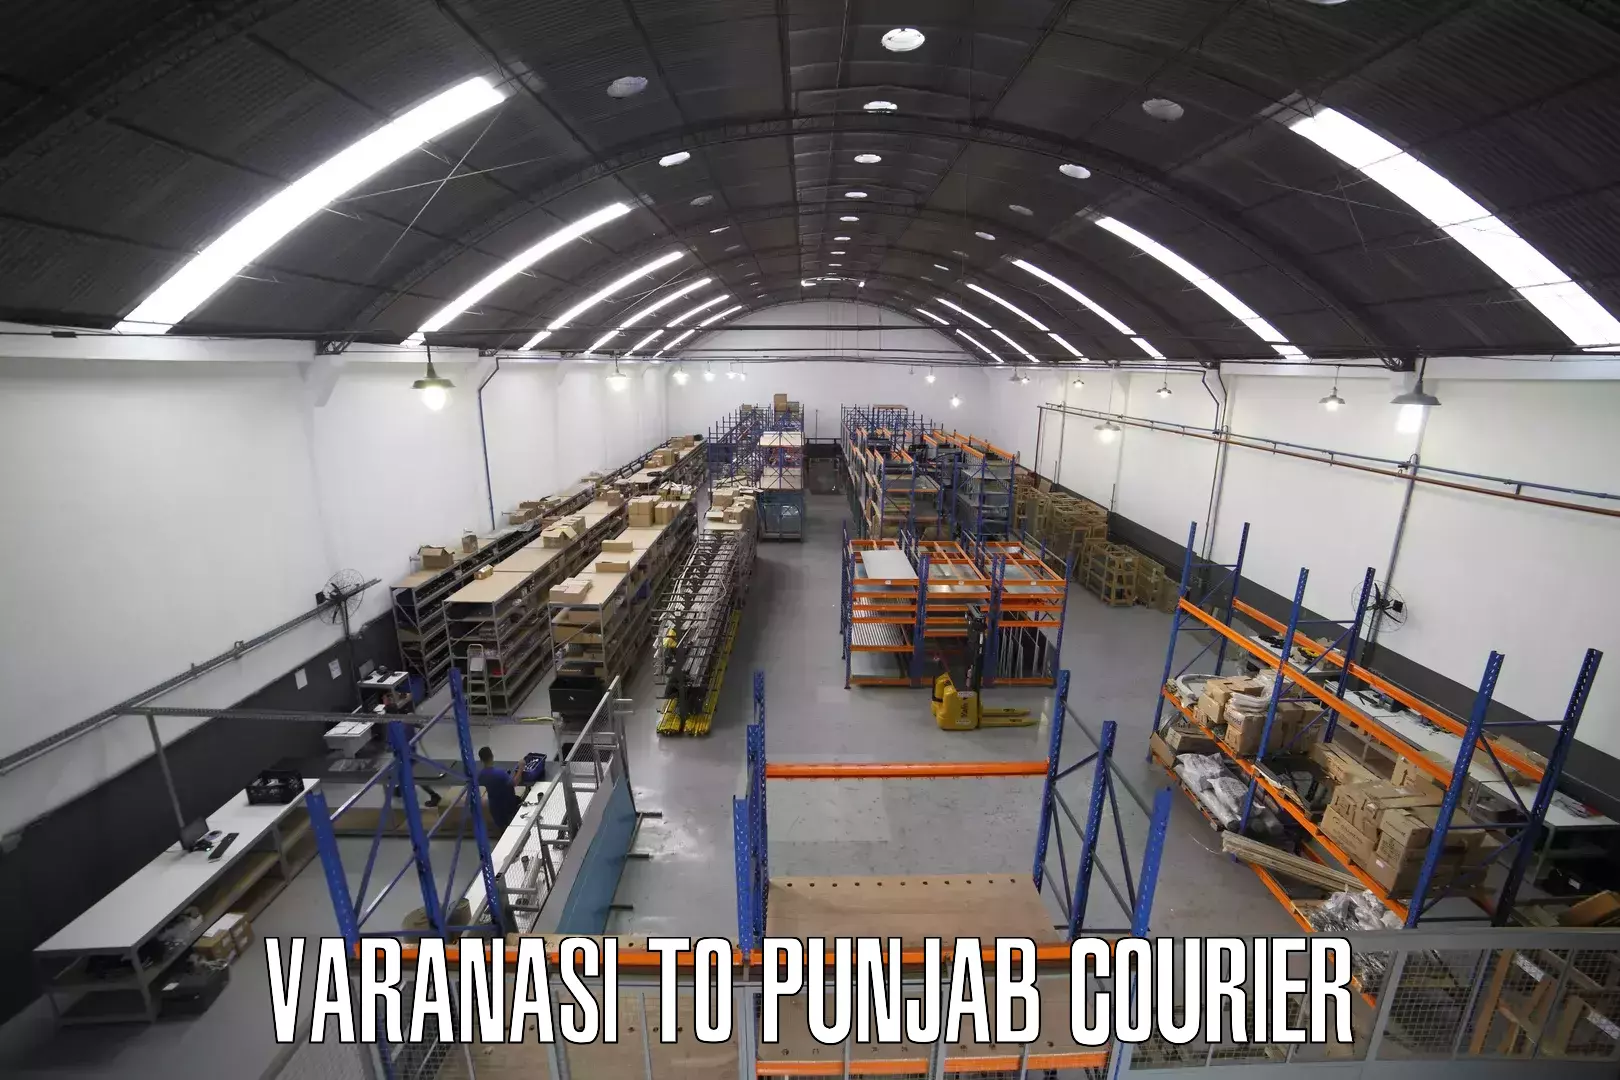 Express courier capabilities Varanasi to Moga